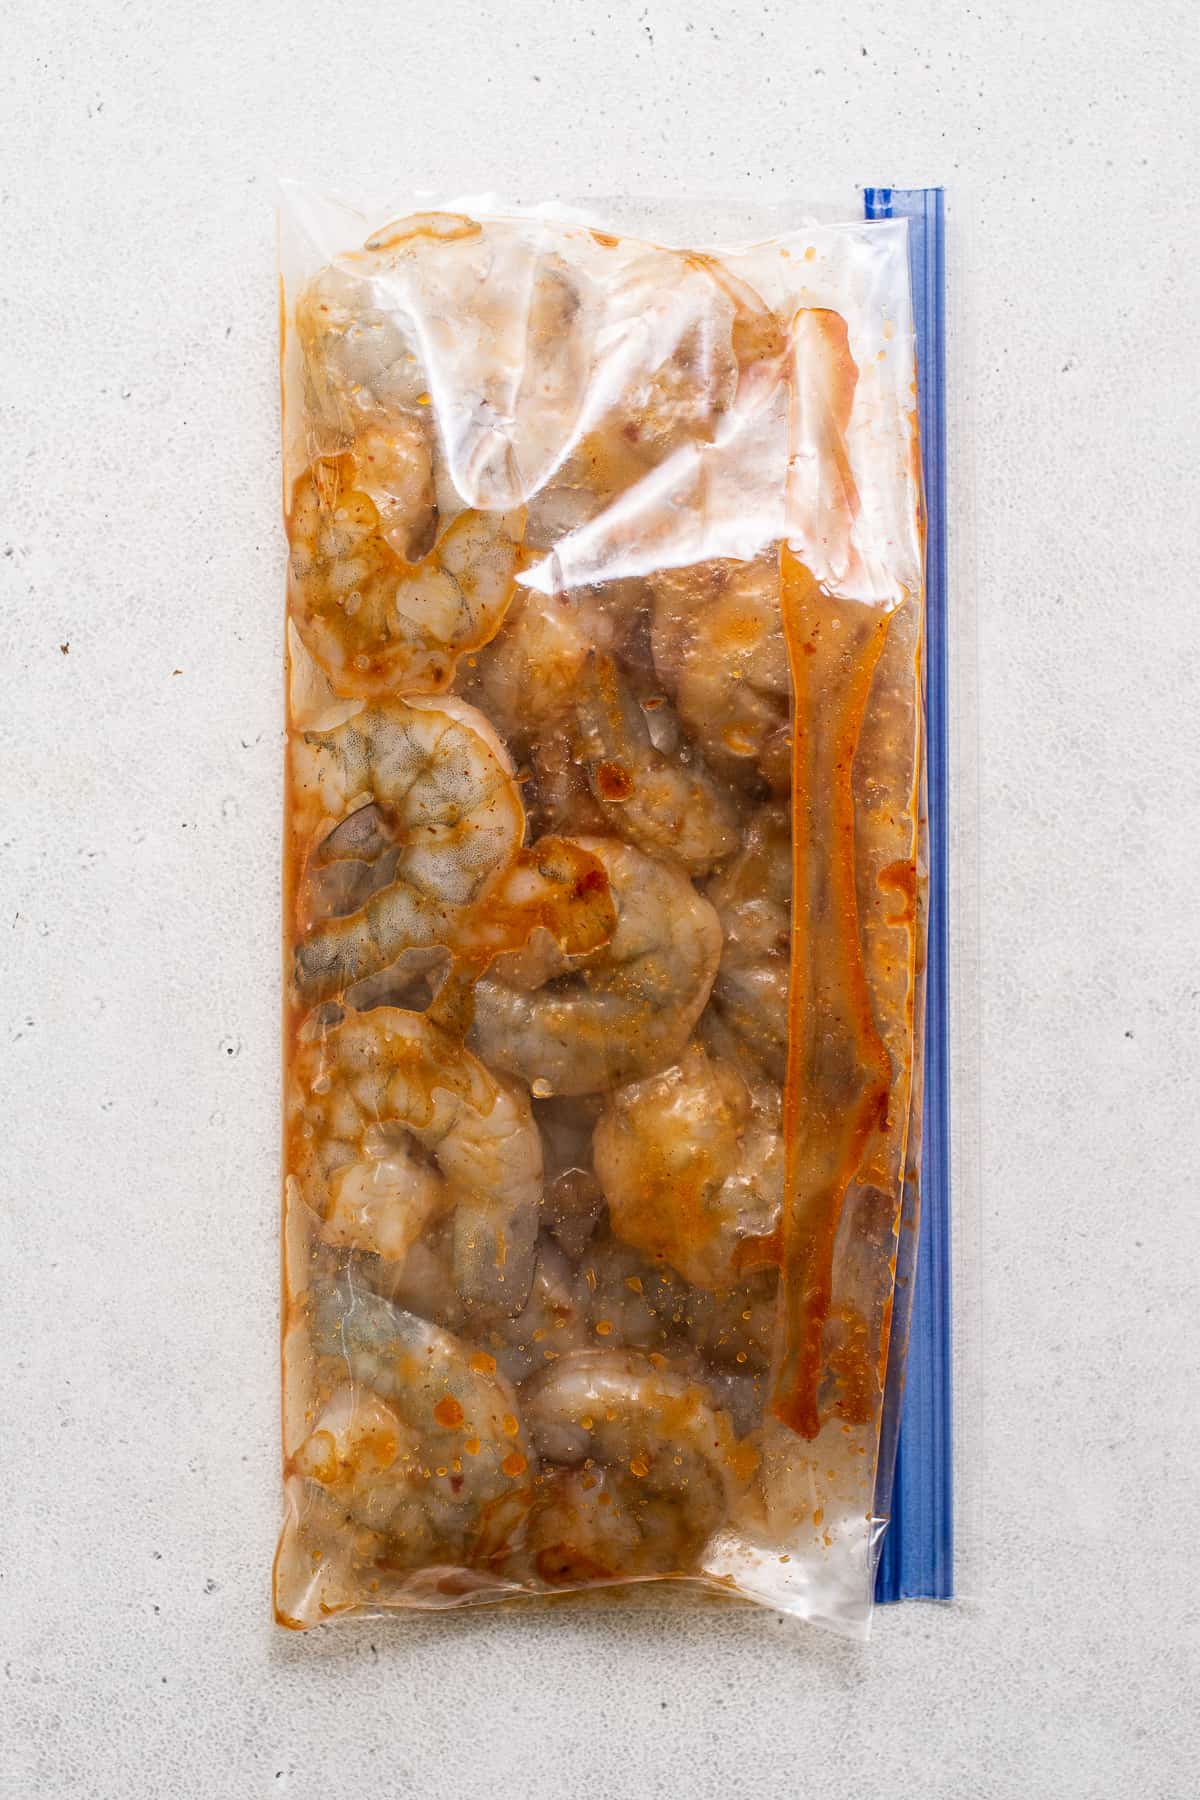 shrimp marinating in sauce.